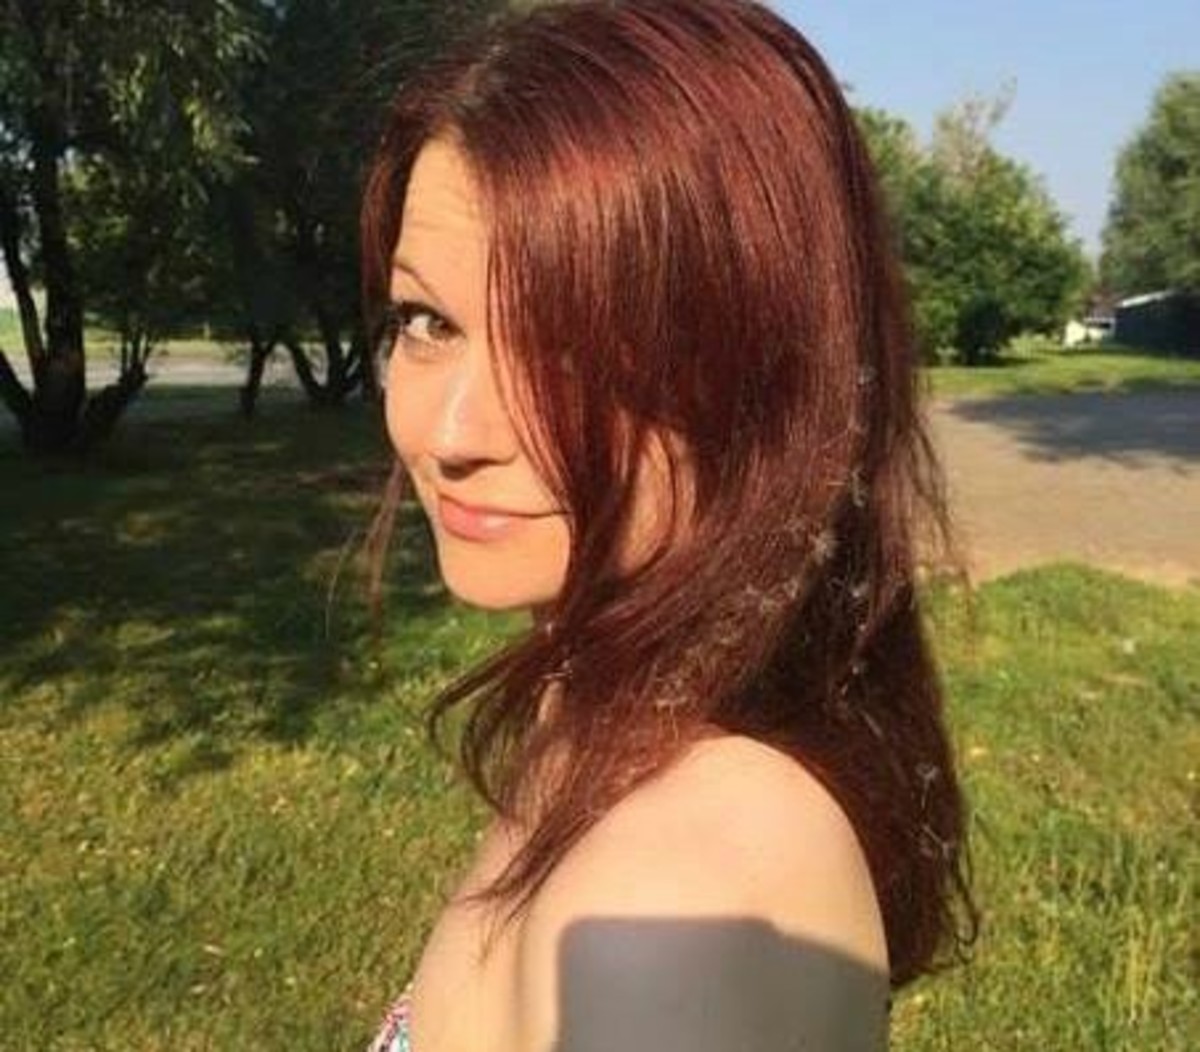 Γιούλια Σκριπάλ: Αυτή είναι η κόρη του Ρώσου πράκτορα που Χαροπαλεύει